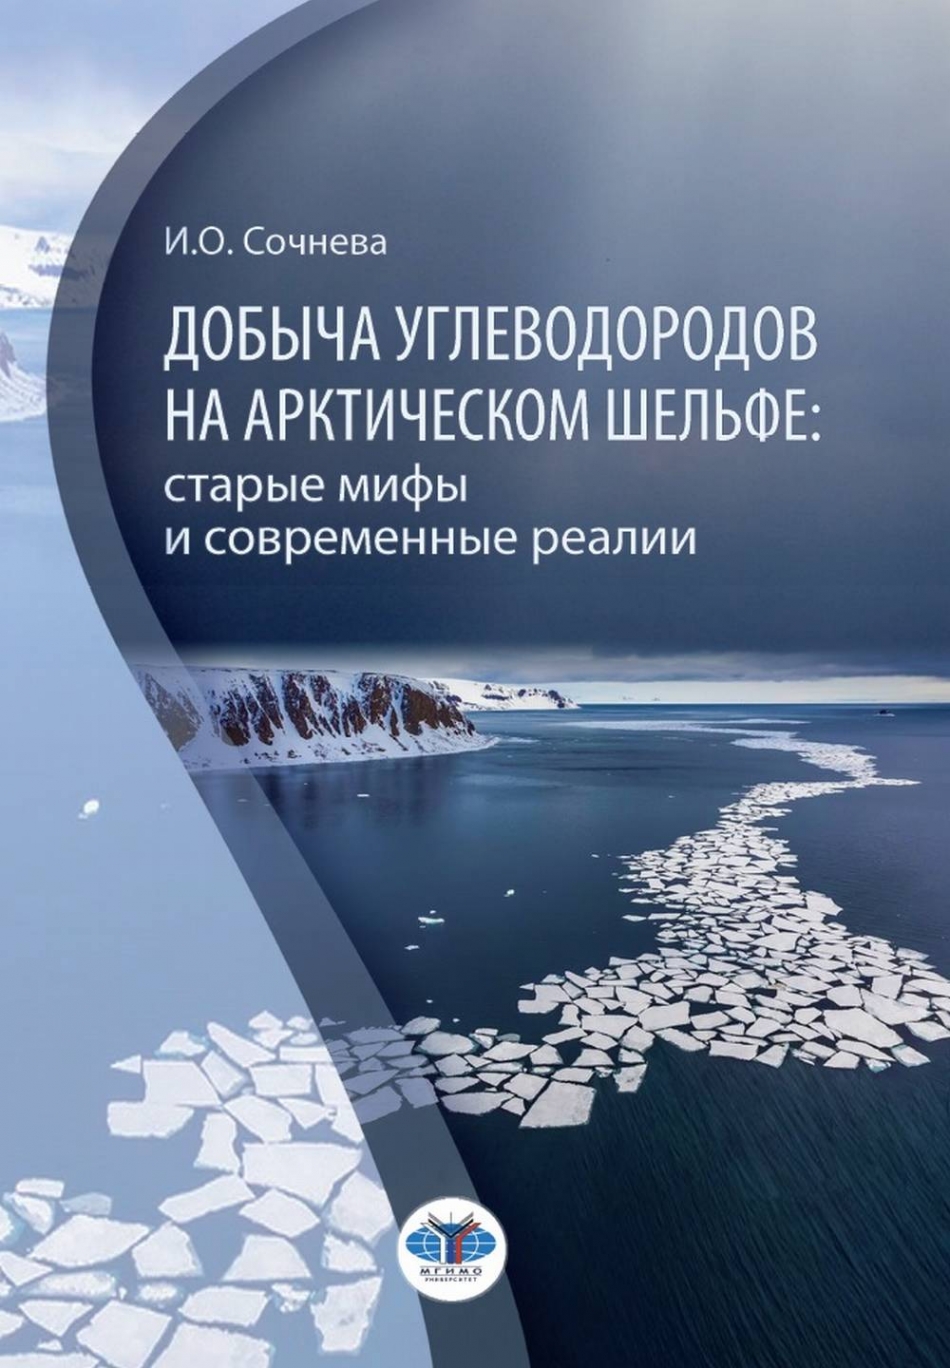 Сочнева И.О. Добыча углеводородов на арктическом шельфе: старые мифы и современные реалии 